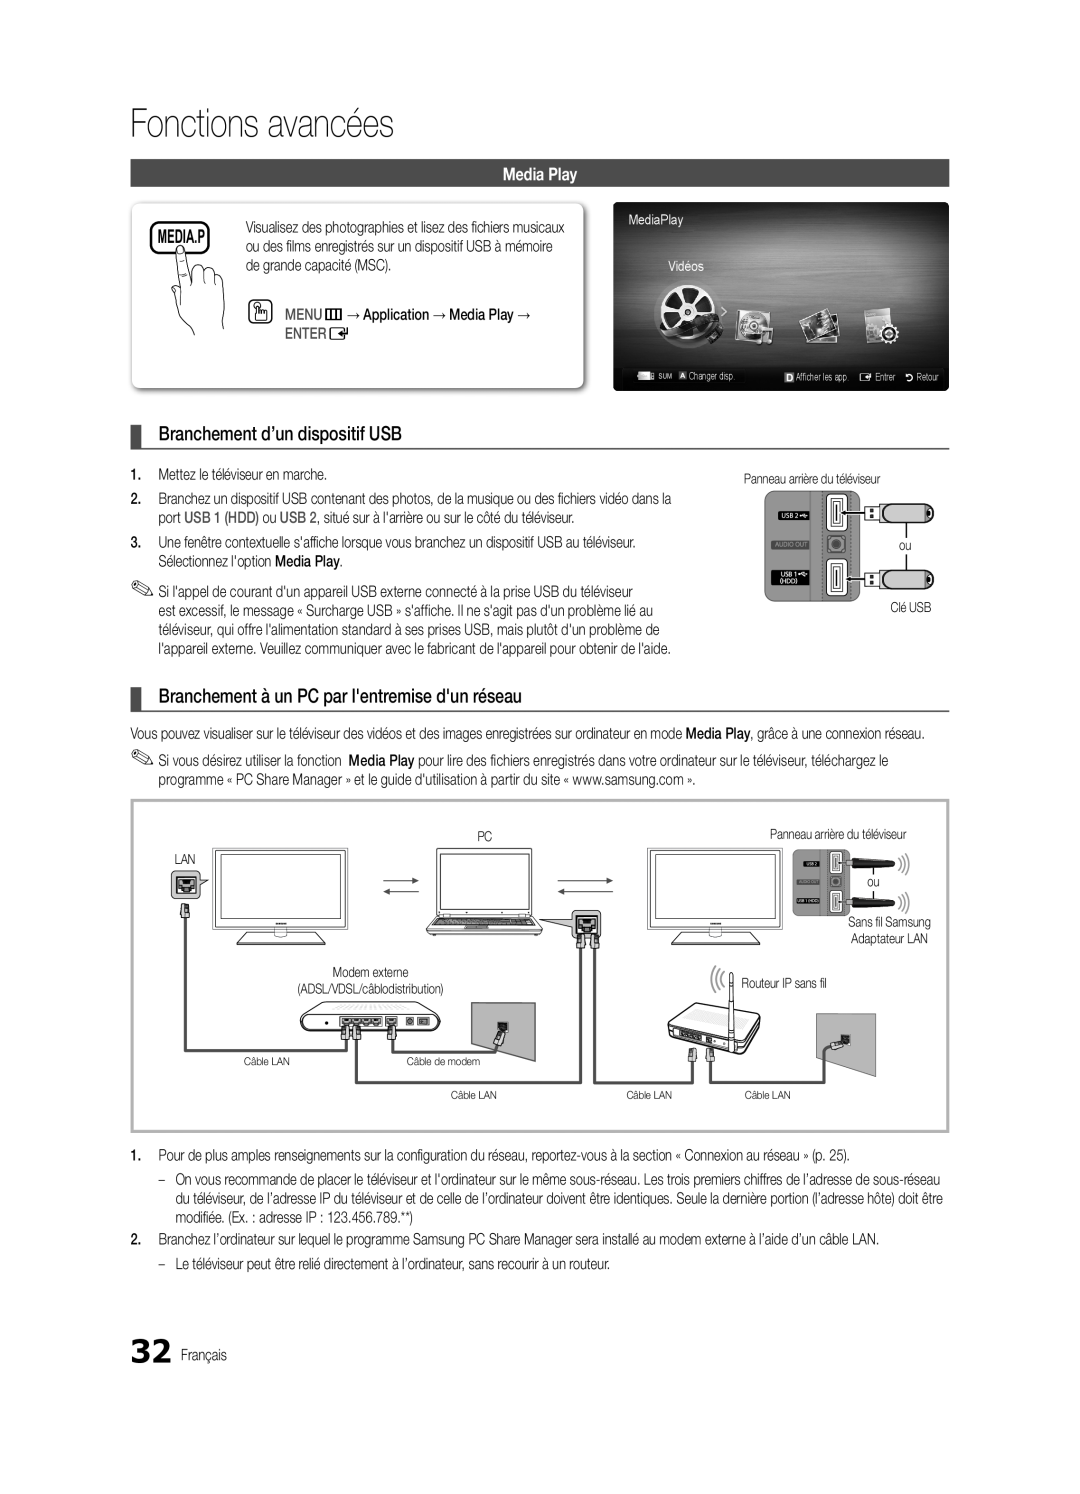 Samsung BN68-03004B-02 Branchement d’un dispositif USB, Branchement à un PC par lentremise dun réseau, Fonctions avancées 